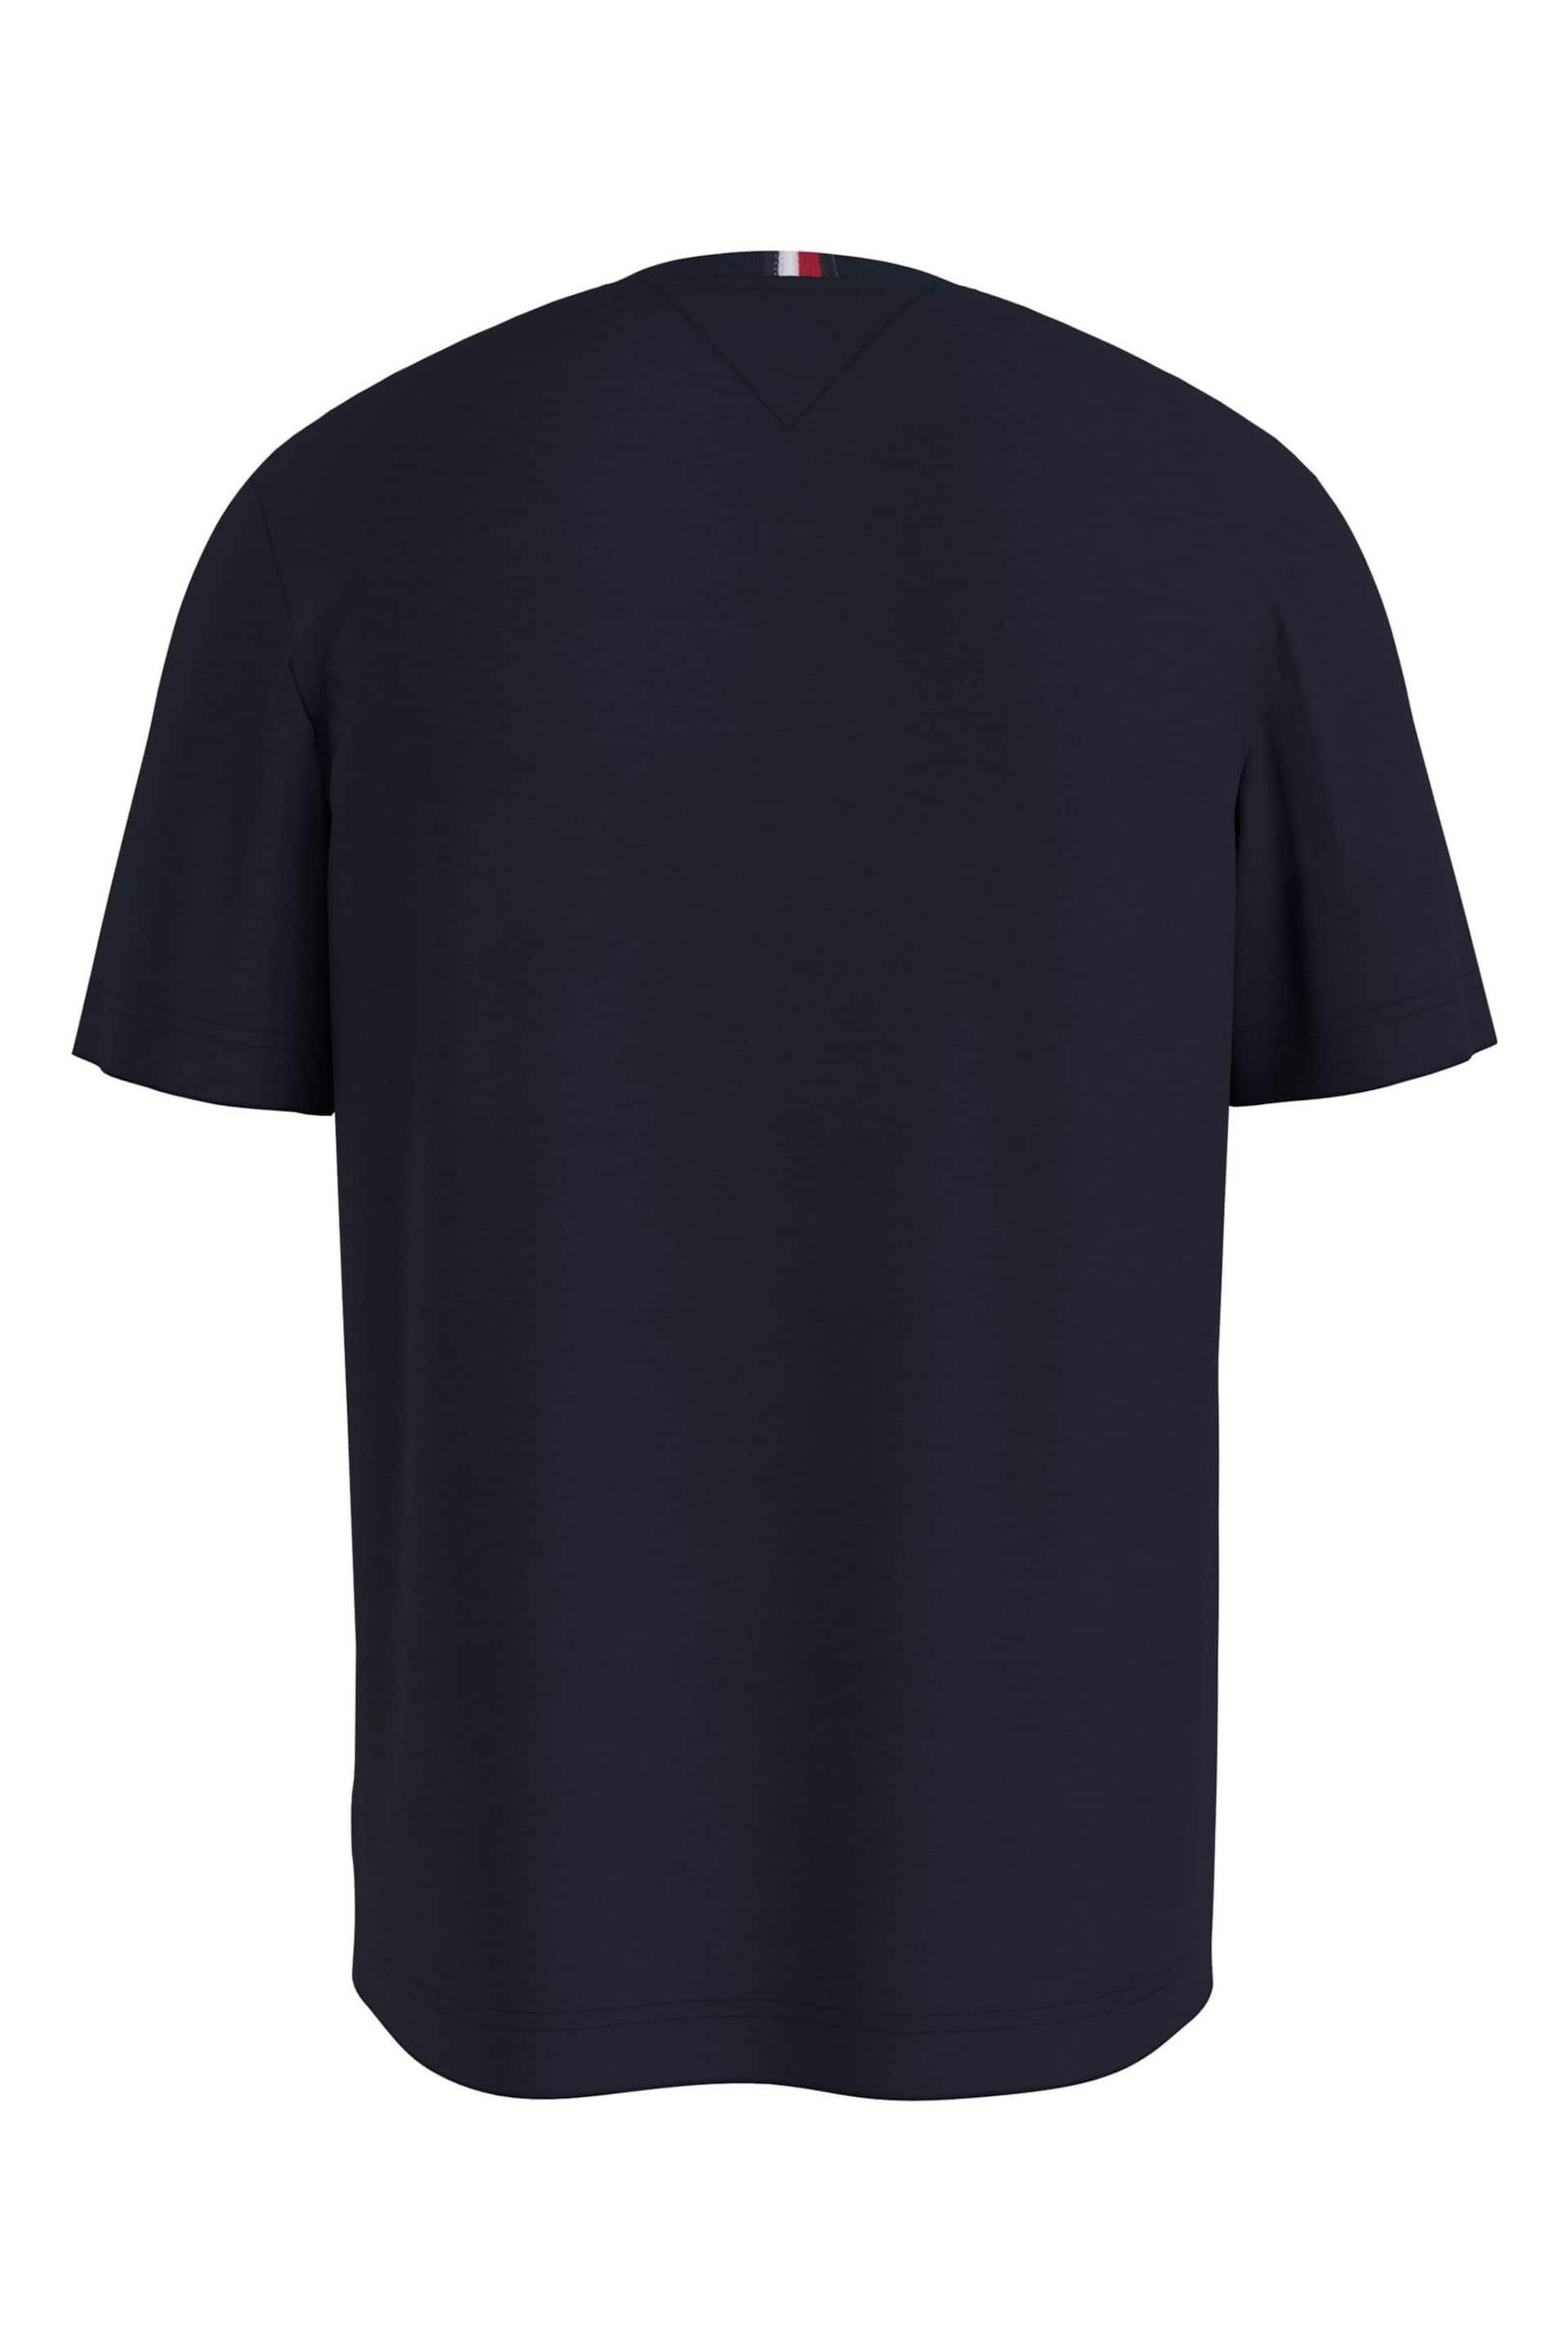 Tommy Hilfiger Blue Monogram T-Shirt - Image 2 of 2